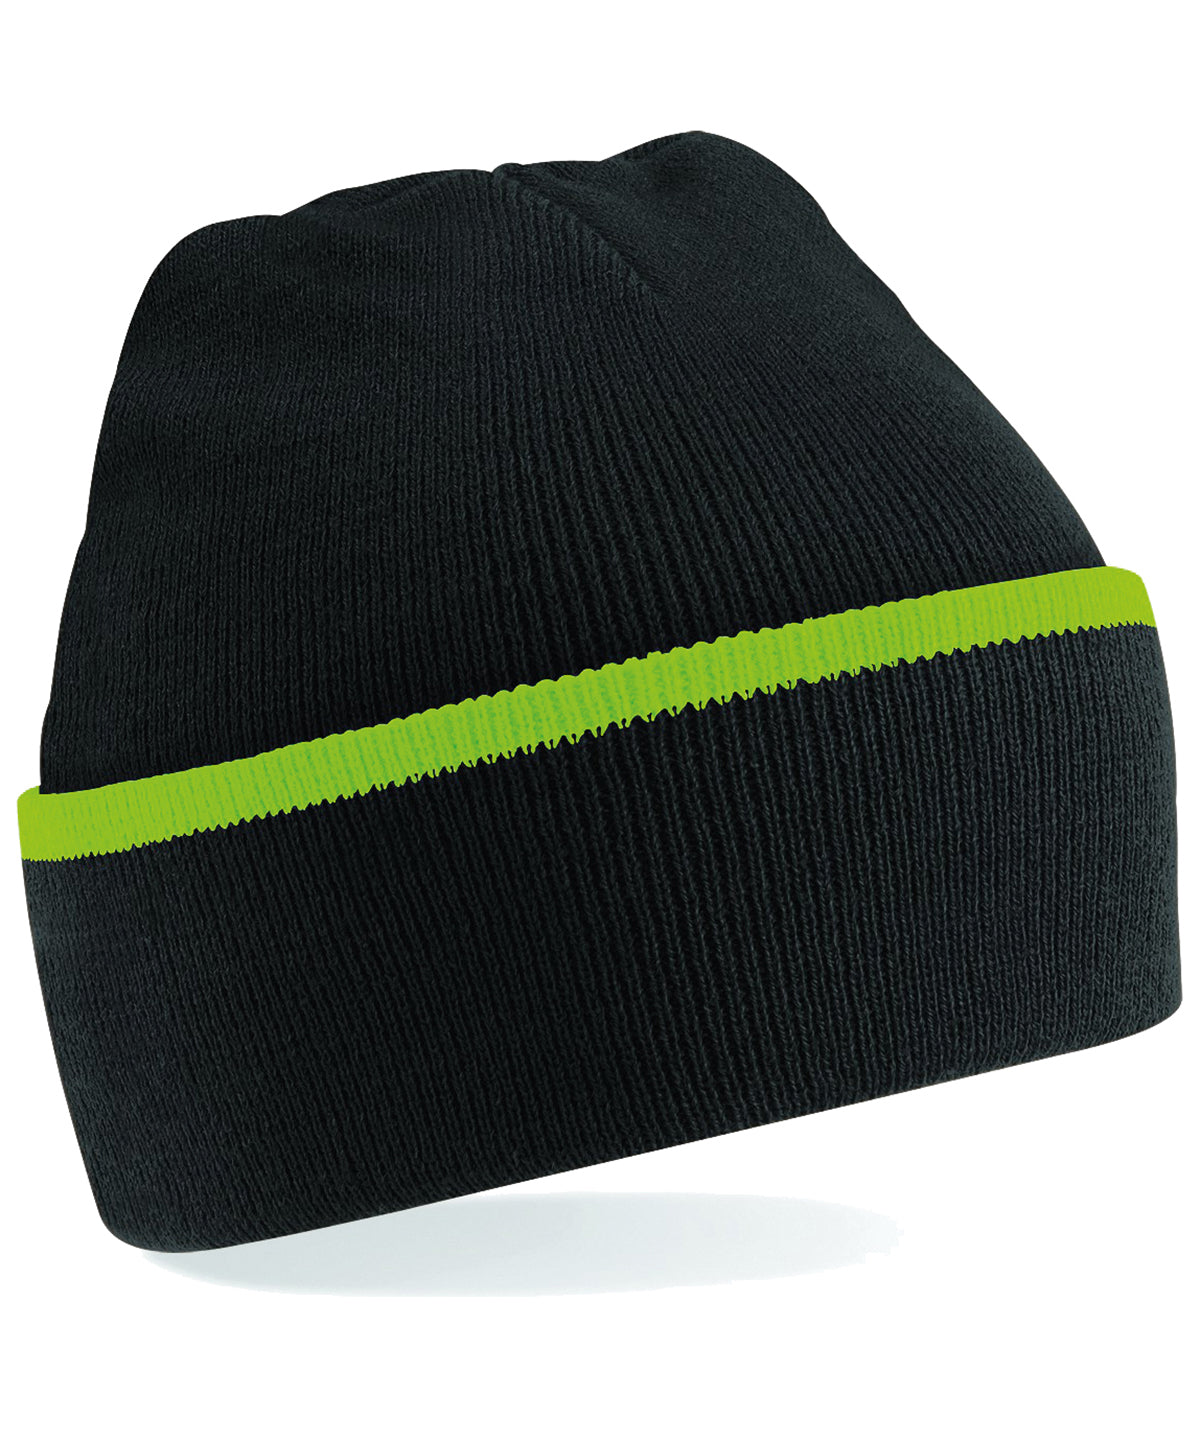 Personalised Hats - Black Beechfield Teamwear beanie